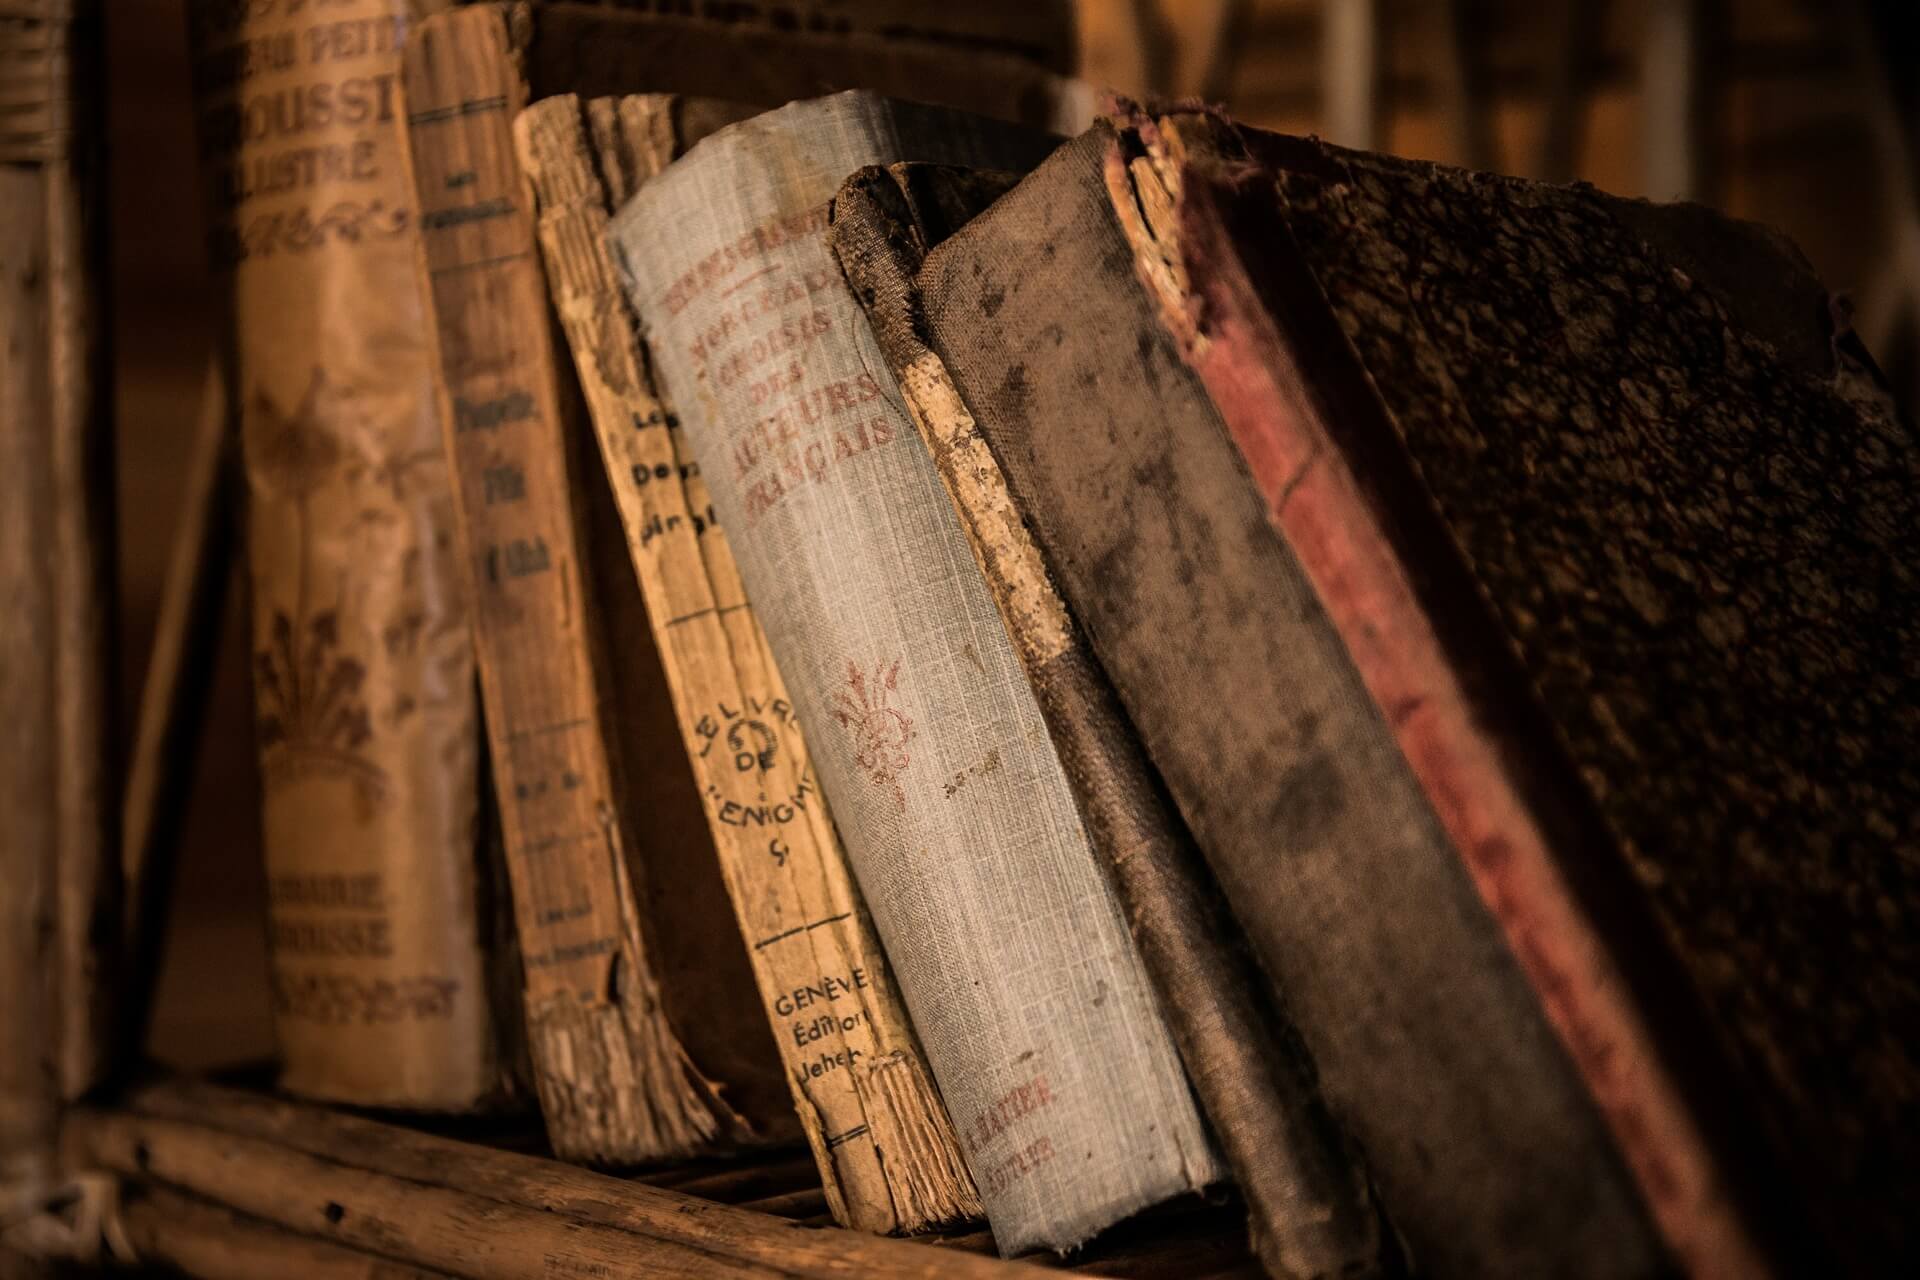 Alte Bücher lehnen in einem Bücherregal schräg übereinander